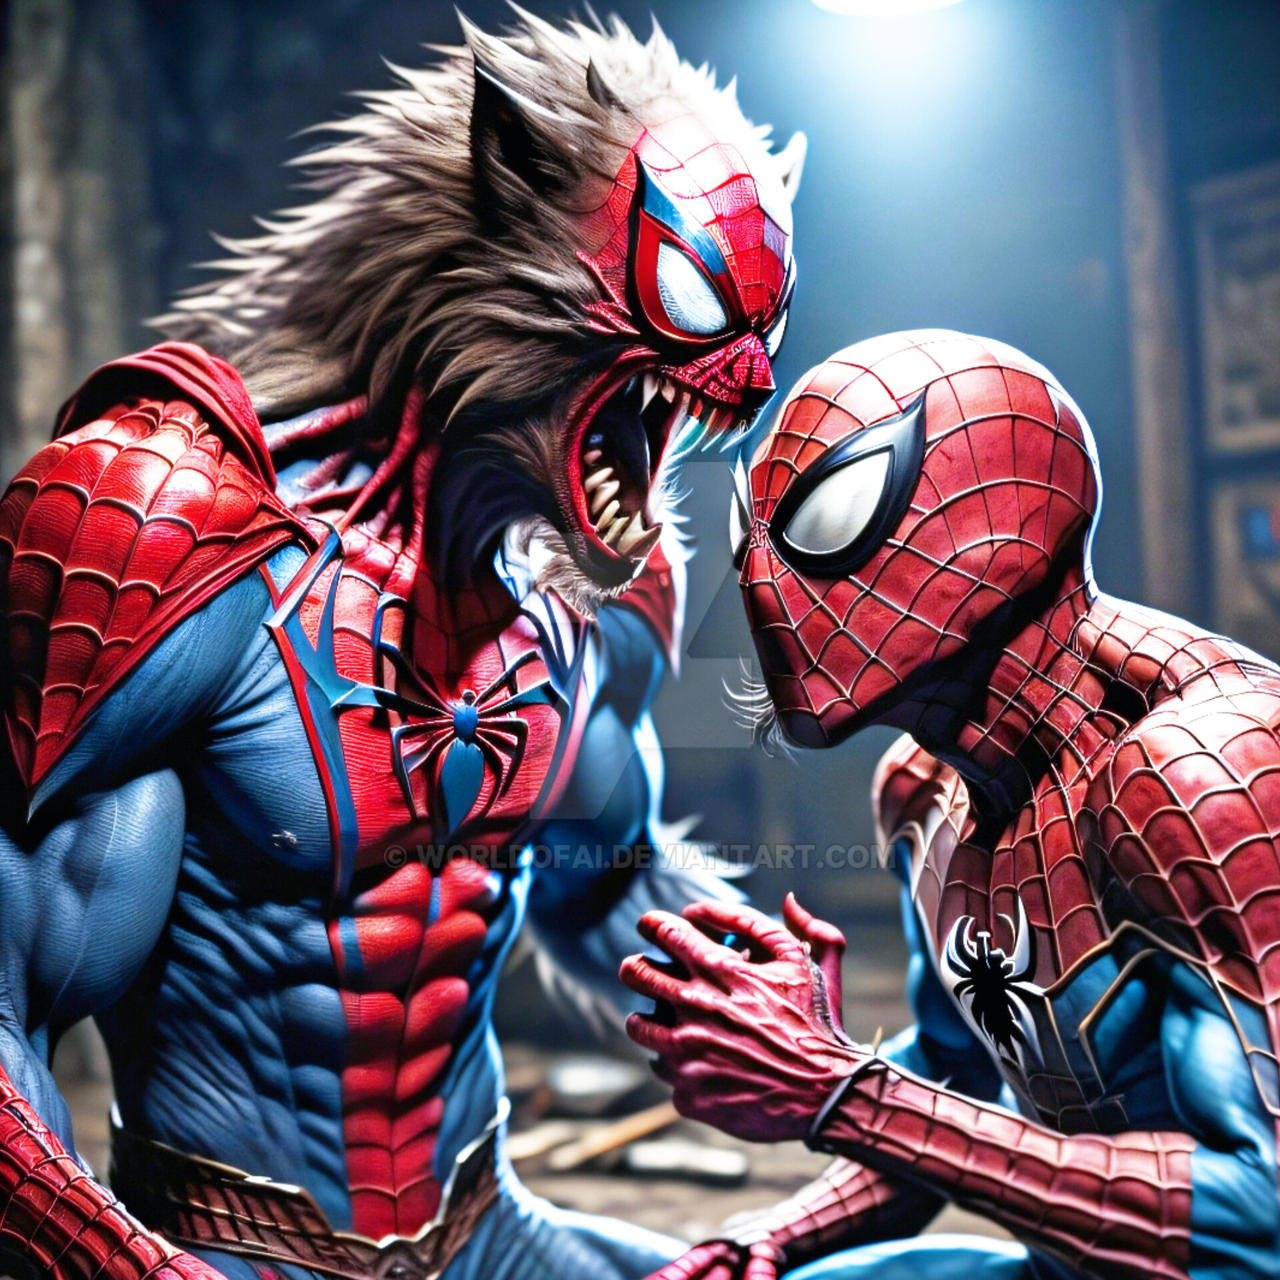 Top 12 Spider-Man Movies by Wolf-ShepherdDeviant on DeviantArt